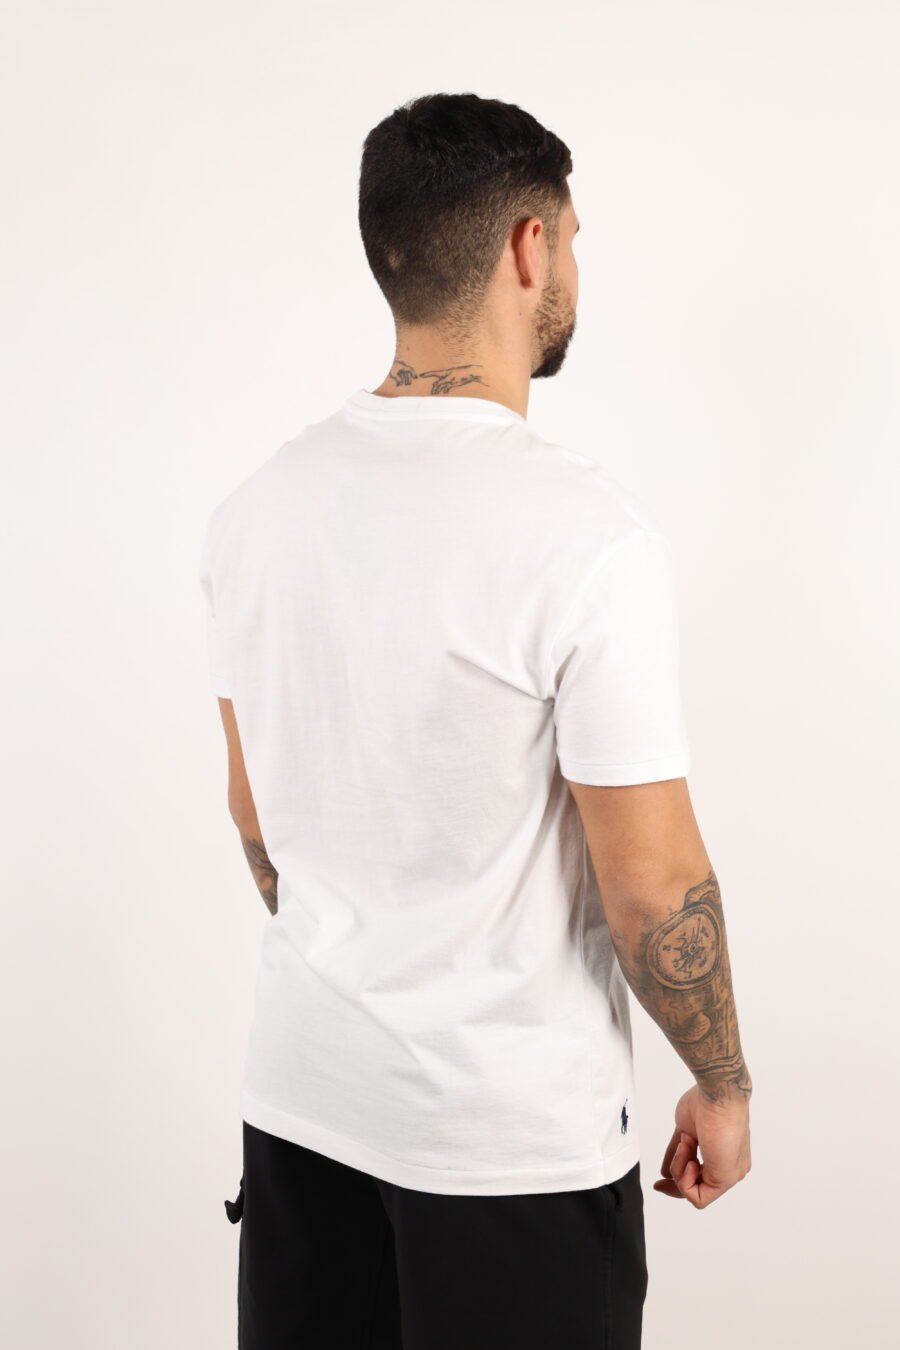 Camiseta blanca con maxilogo "polo" negro - 108959